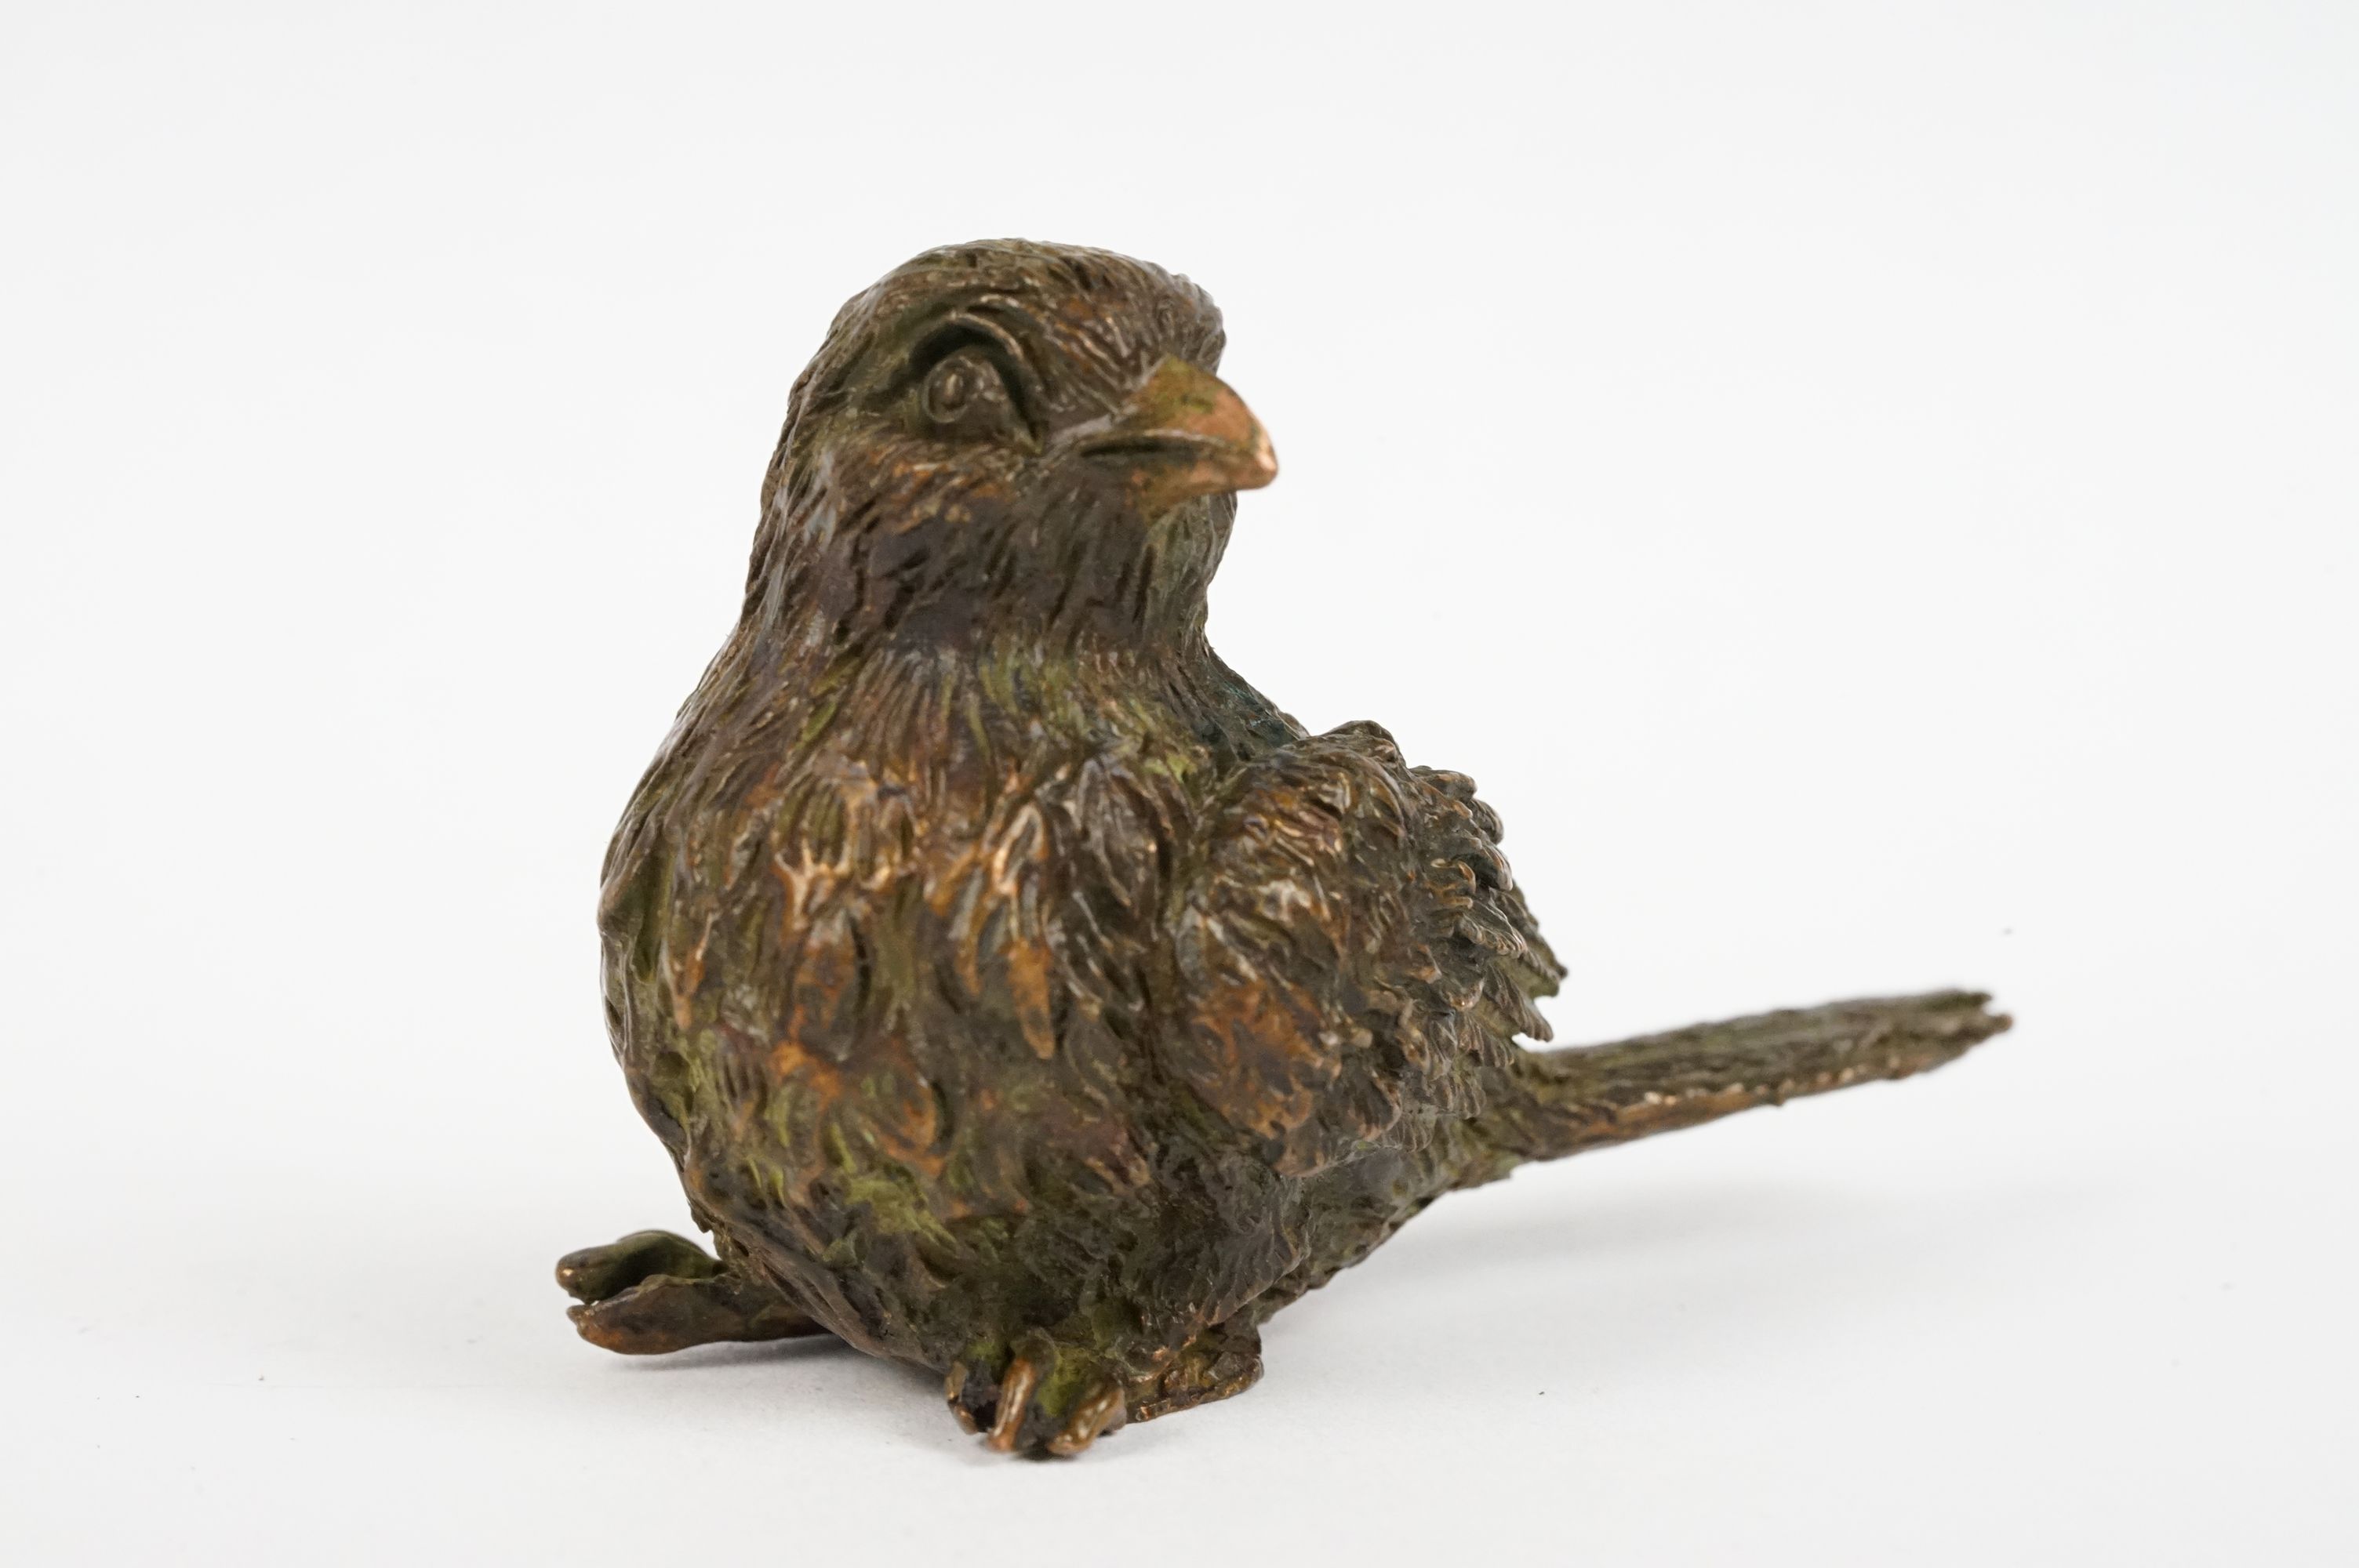 Japanese Bronze figure of a Sparrow bird, approx 5cm long